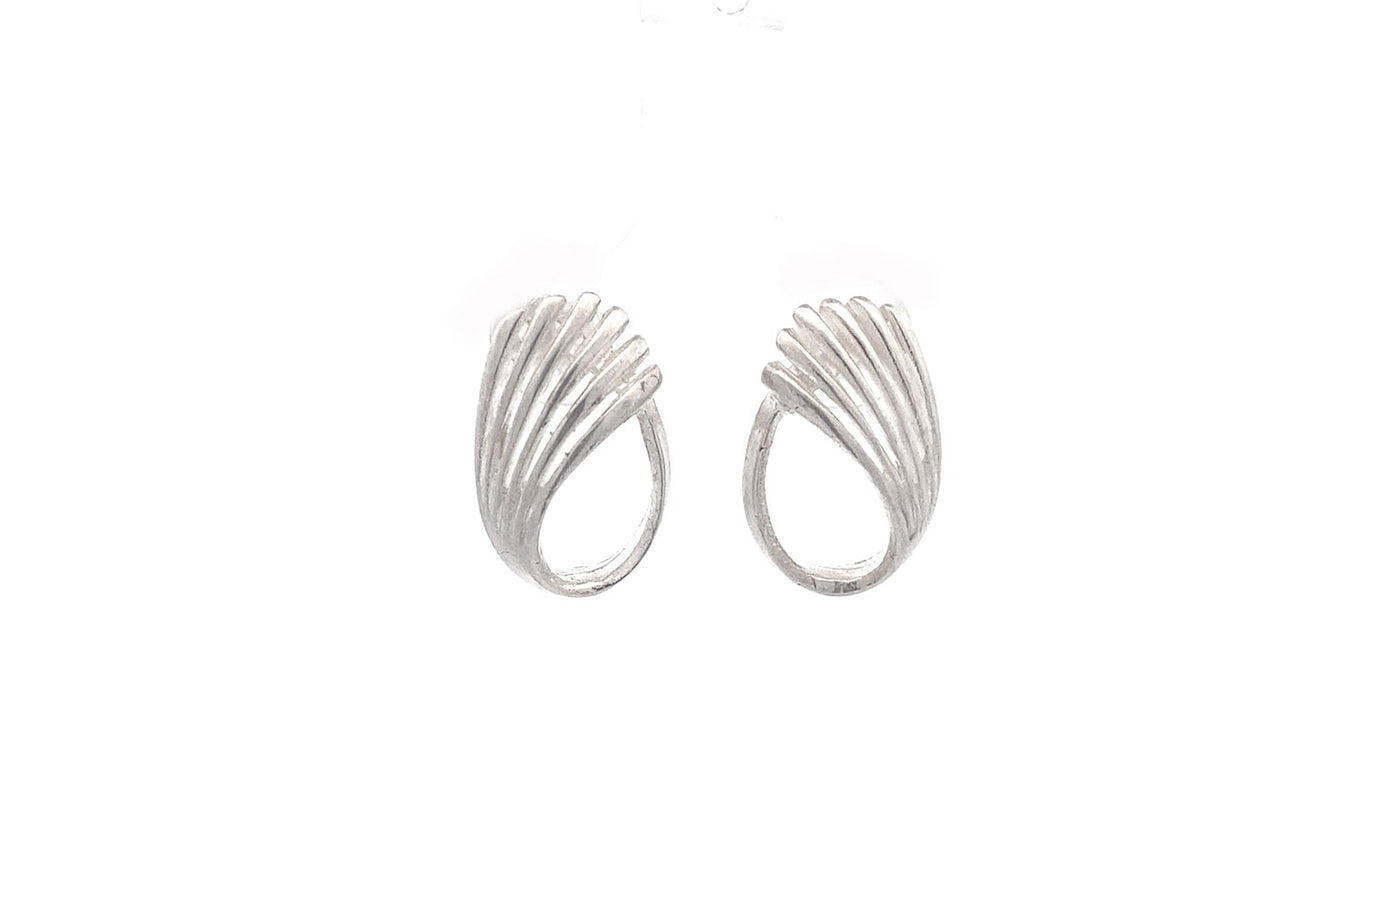 Fan Twist Earrings in Sterling Silver